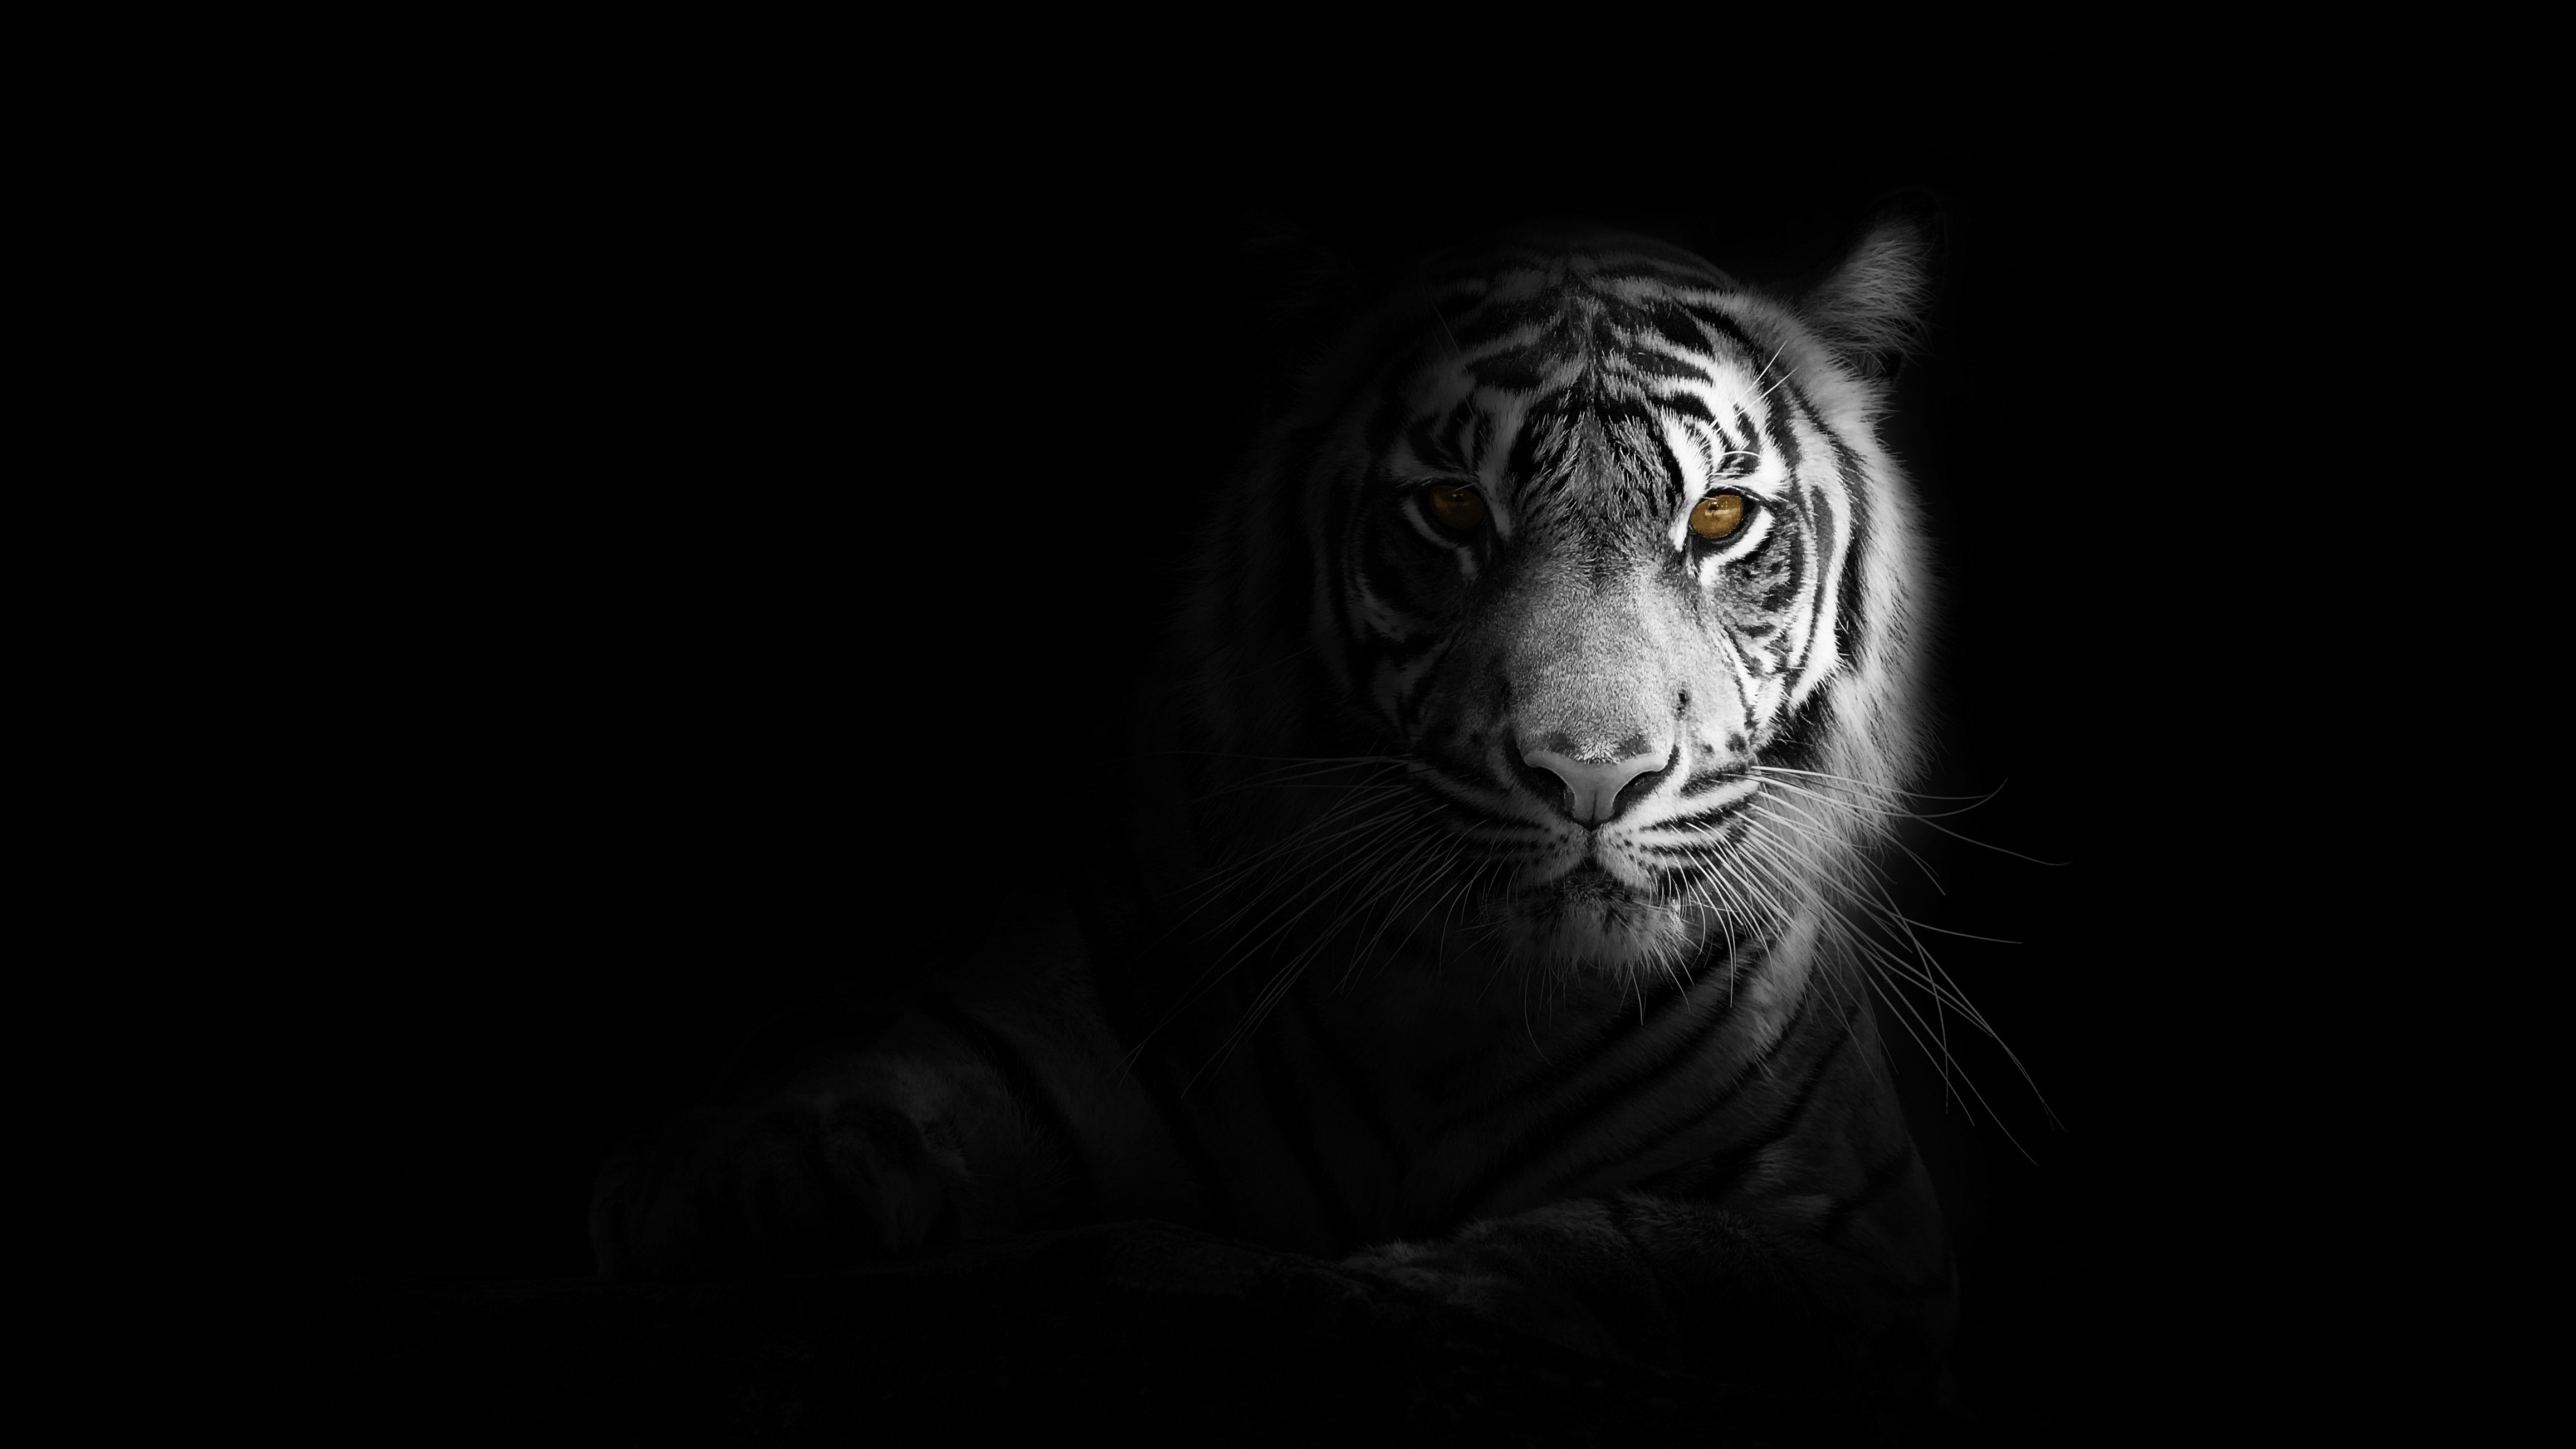 White tiger 4K Wallpaper, Bengal Tiger, Black background, 5K, Animals